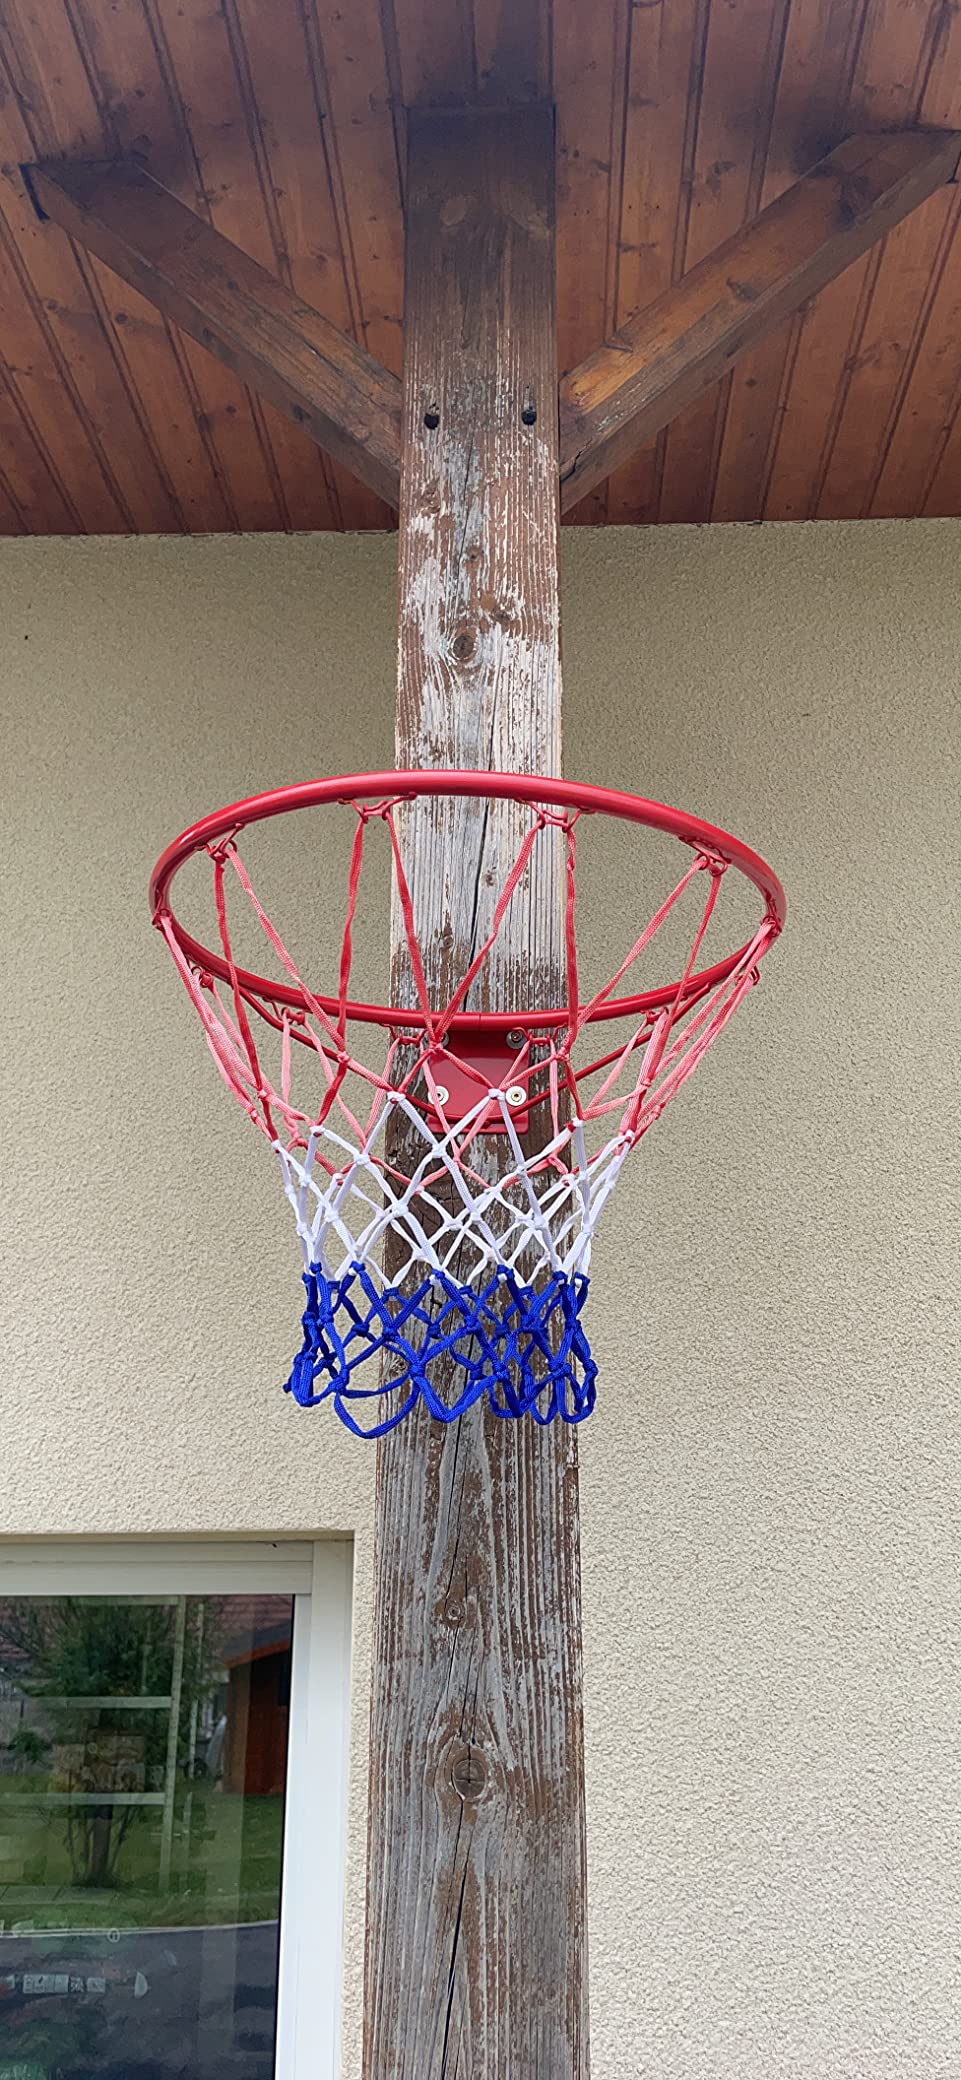 panier de basket giantex 46cm de diamètre avec filet fixation au